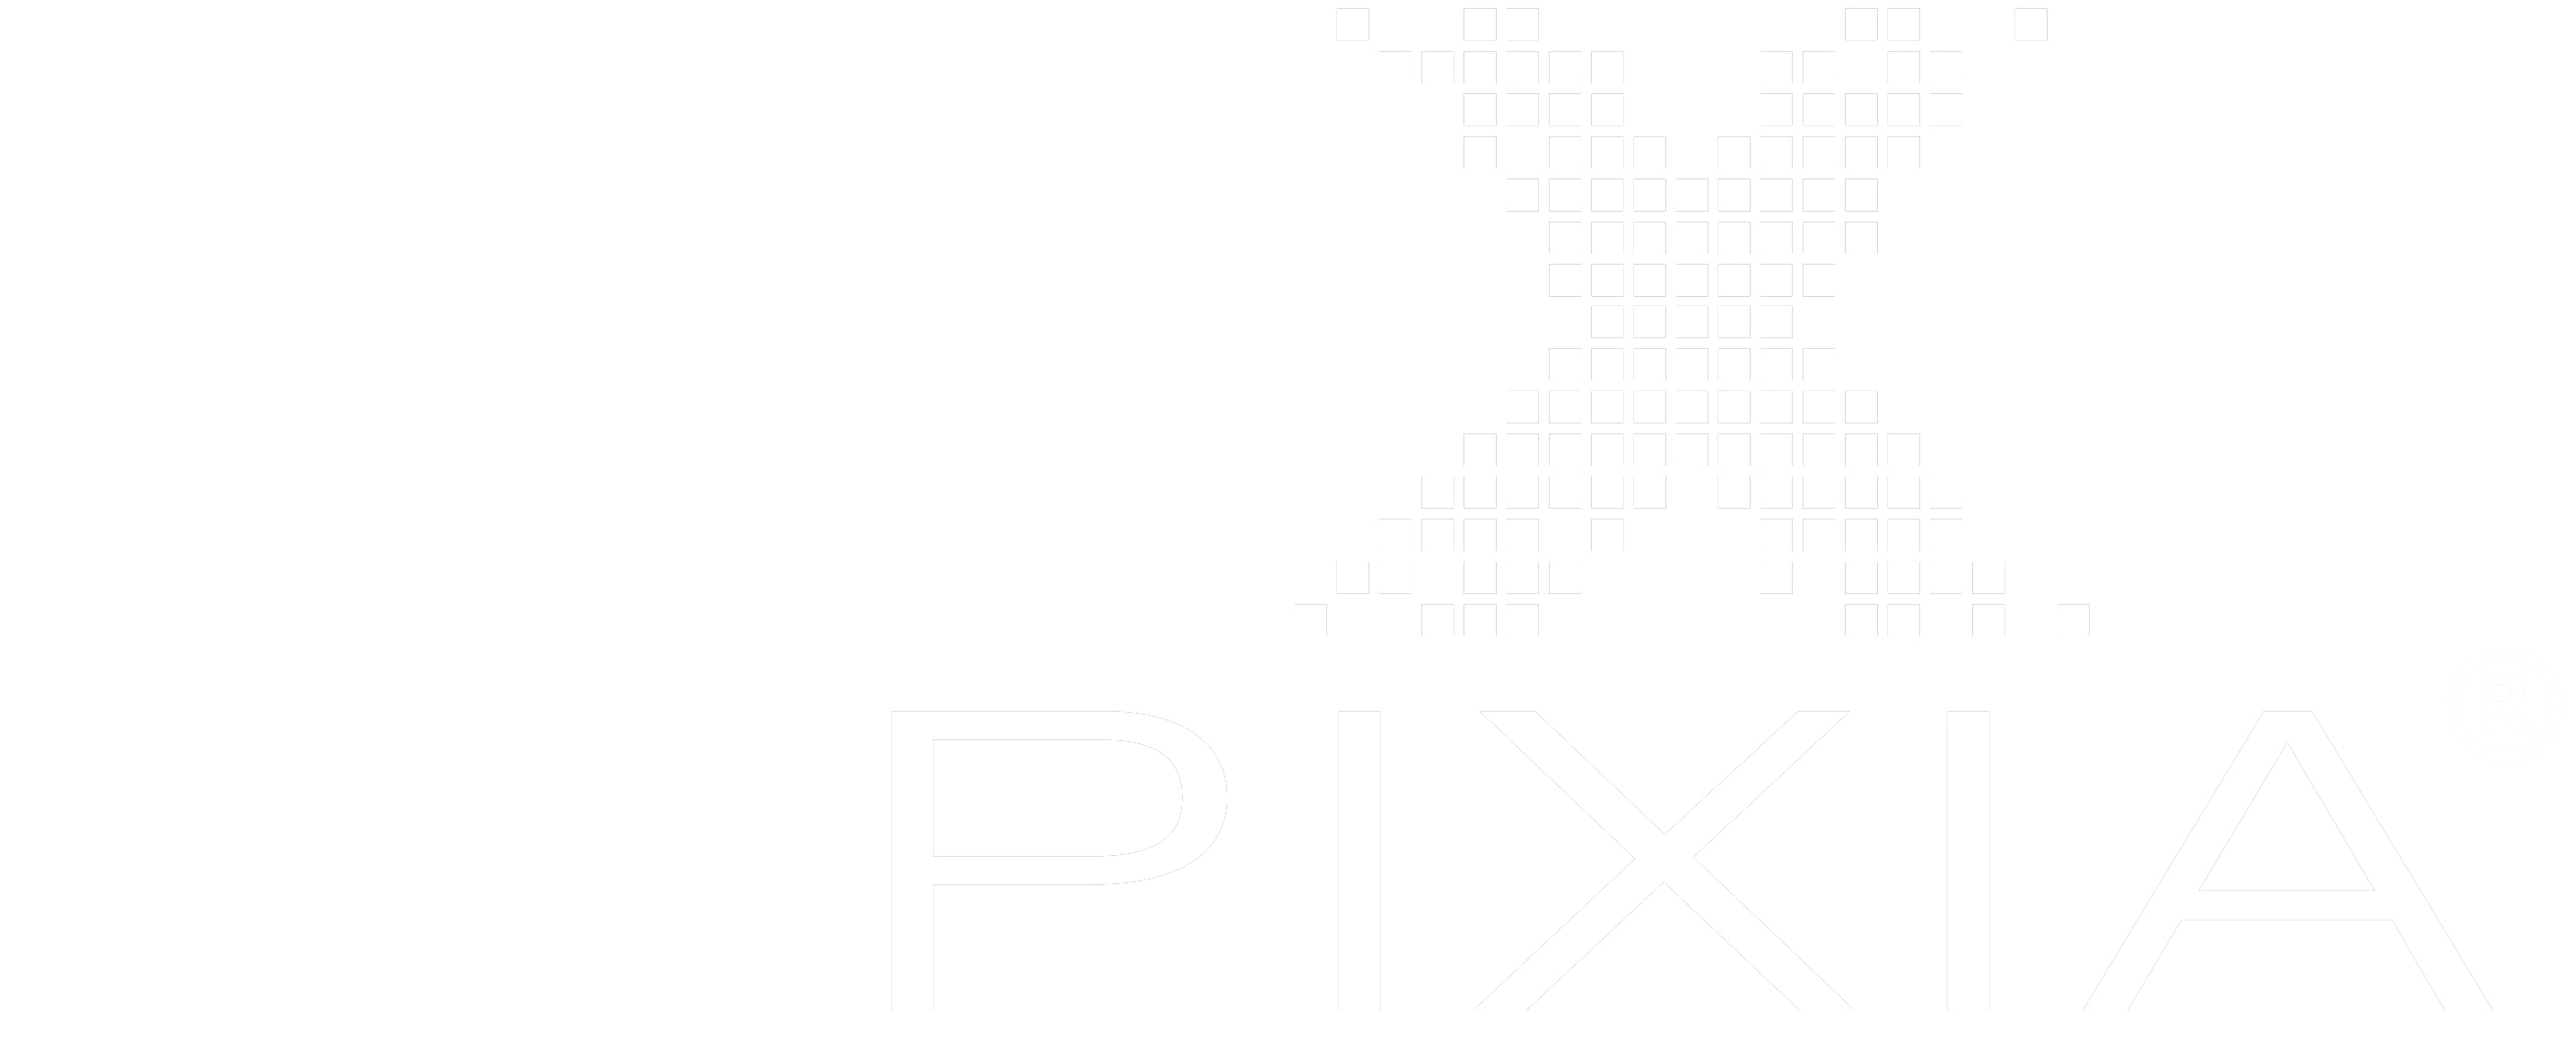 Pixia Logo